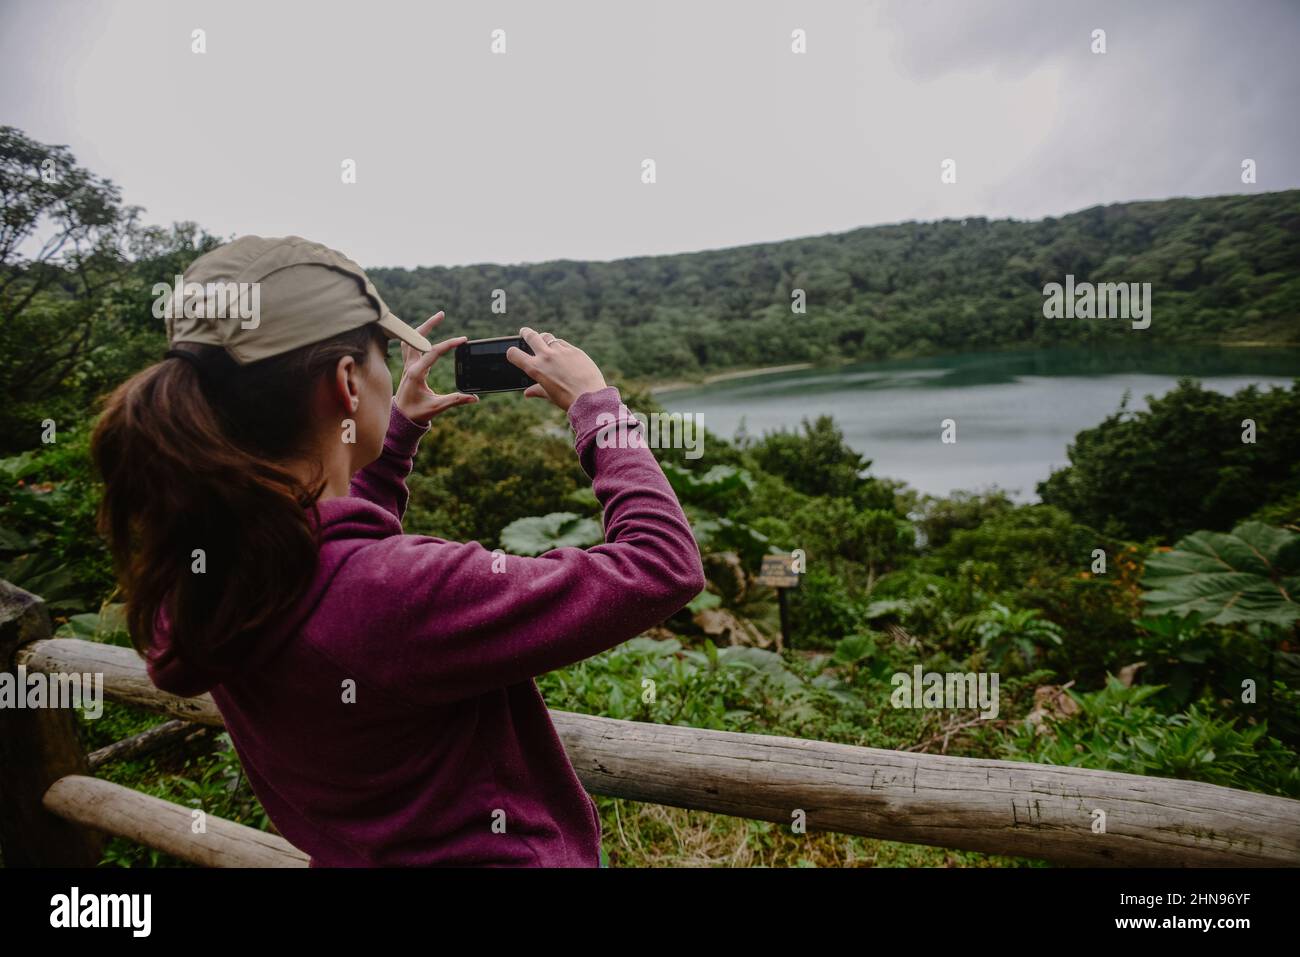 Jeune femme photographiant le lac Botos, un cratère inactif situé dans le parc national du volcan Poas, au Costa Rica Banque D'Images